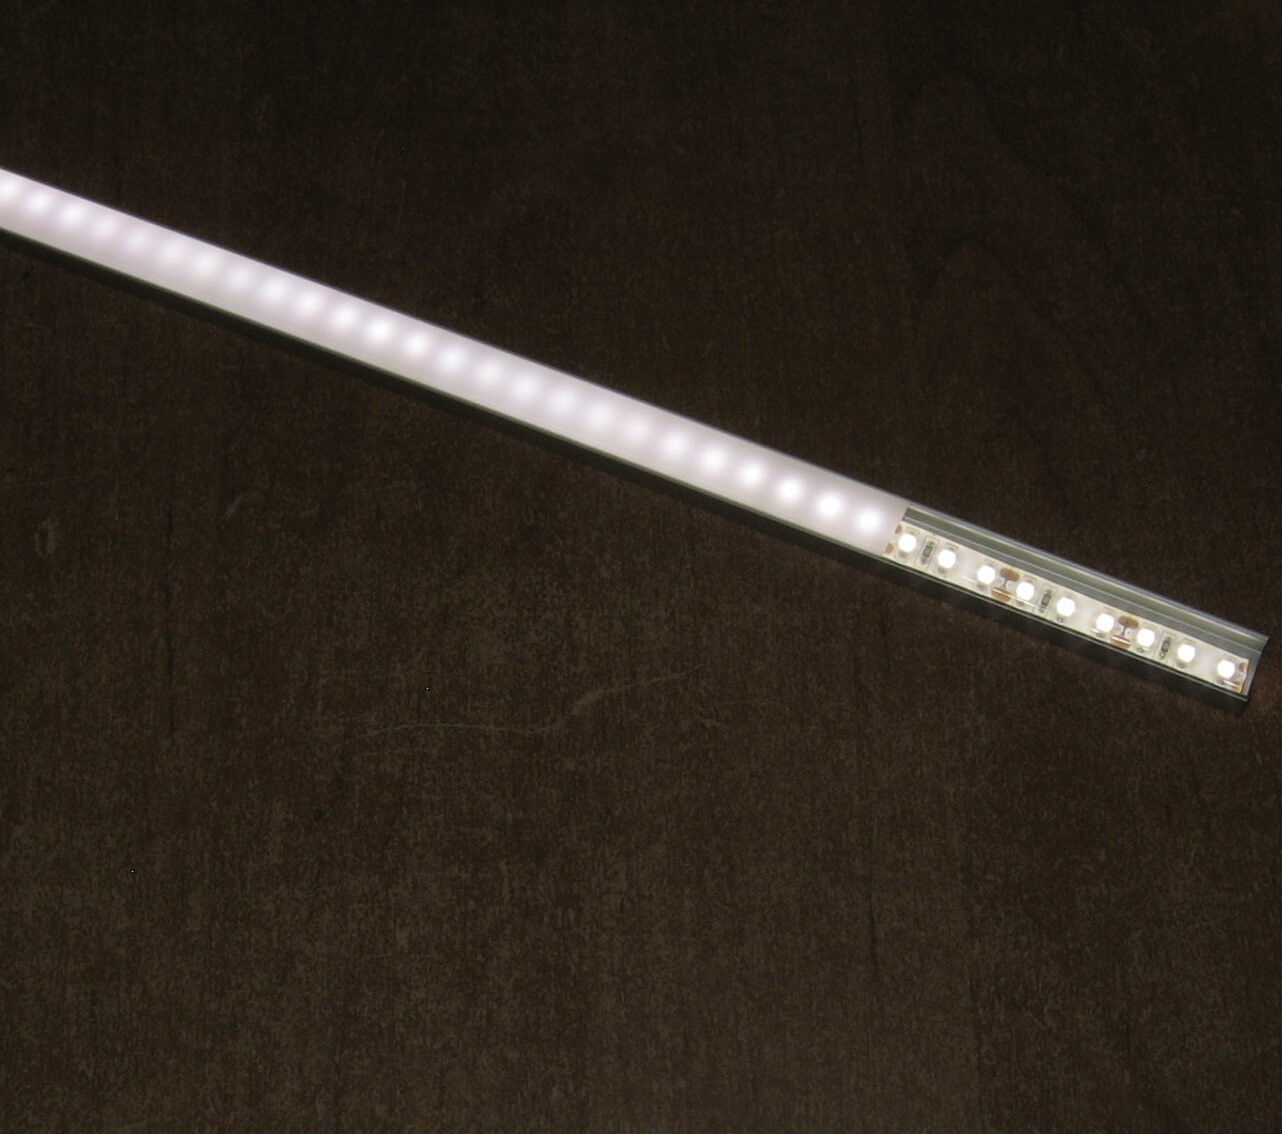 Profil P4-1 z kloszem mlecznym C1. Taśma 3528 9,6W/m. Sekcja cięcia 2,5 cm. Diody widoczne na kloszu